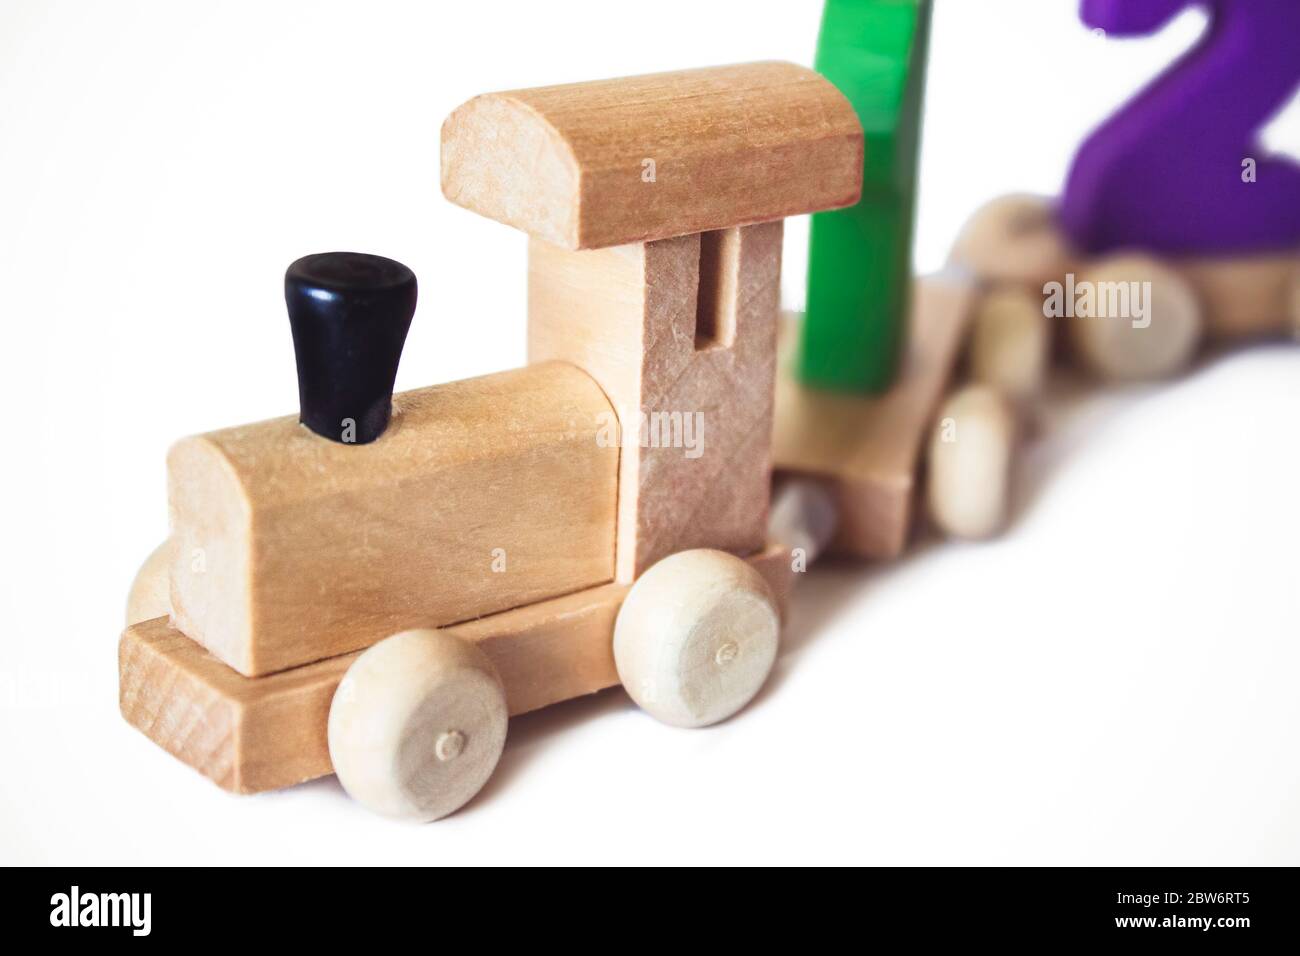 Kinderspielzeug Holzlokomotive mit bunten Zahlen, schönes Lernspielzeug für ein Kind. Hölzerne Spielzeugbahn. Lernspielzeug Aus Holz Stockfoto